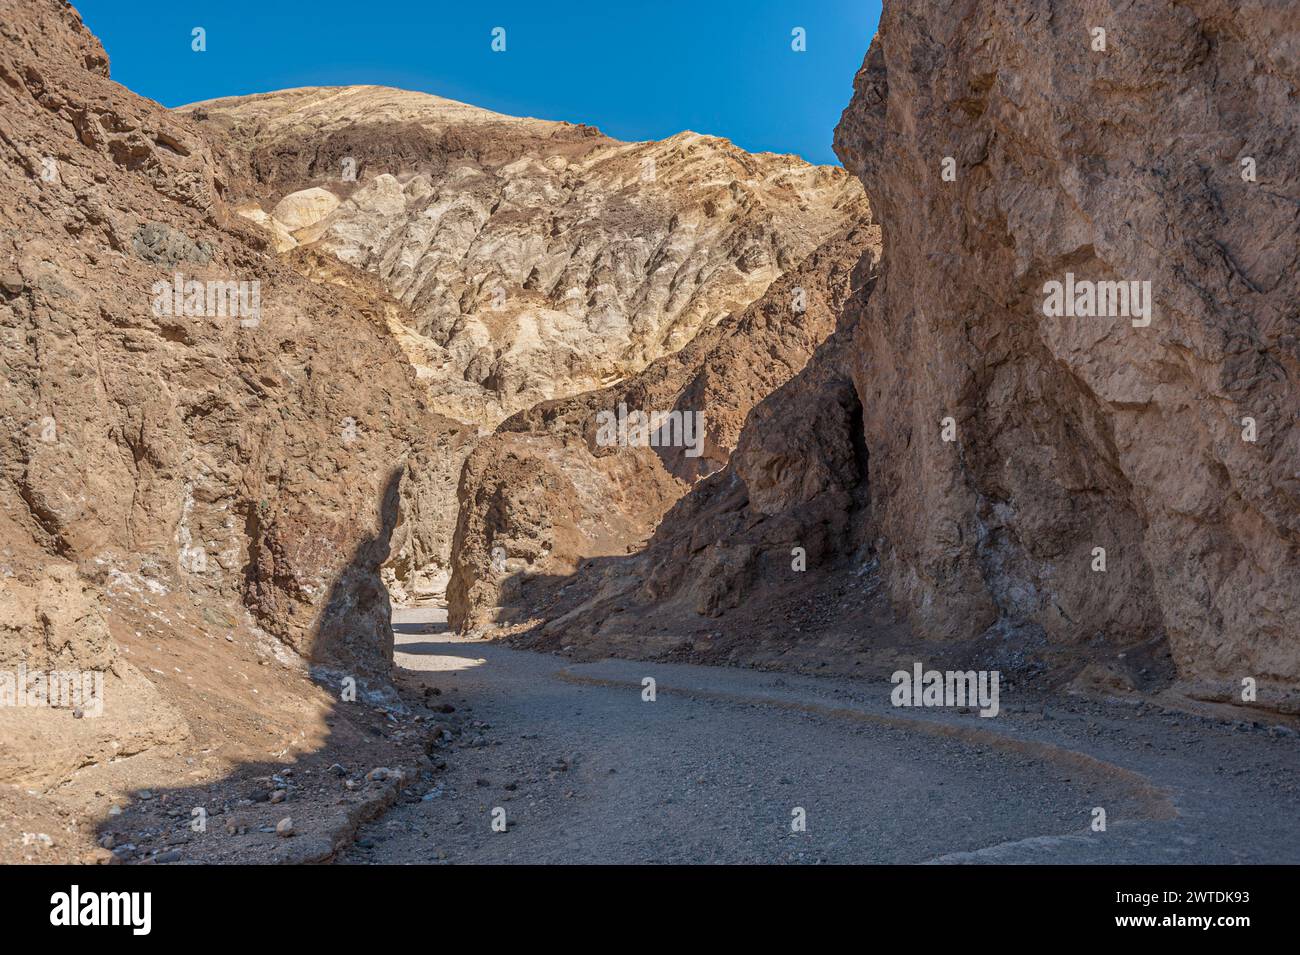 Road through Death Valley canyon, USA Stock Photo